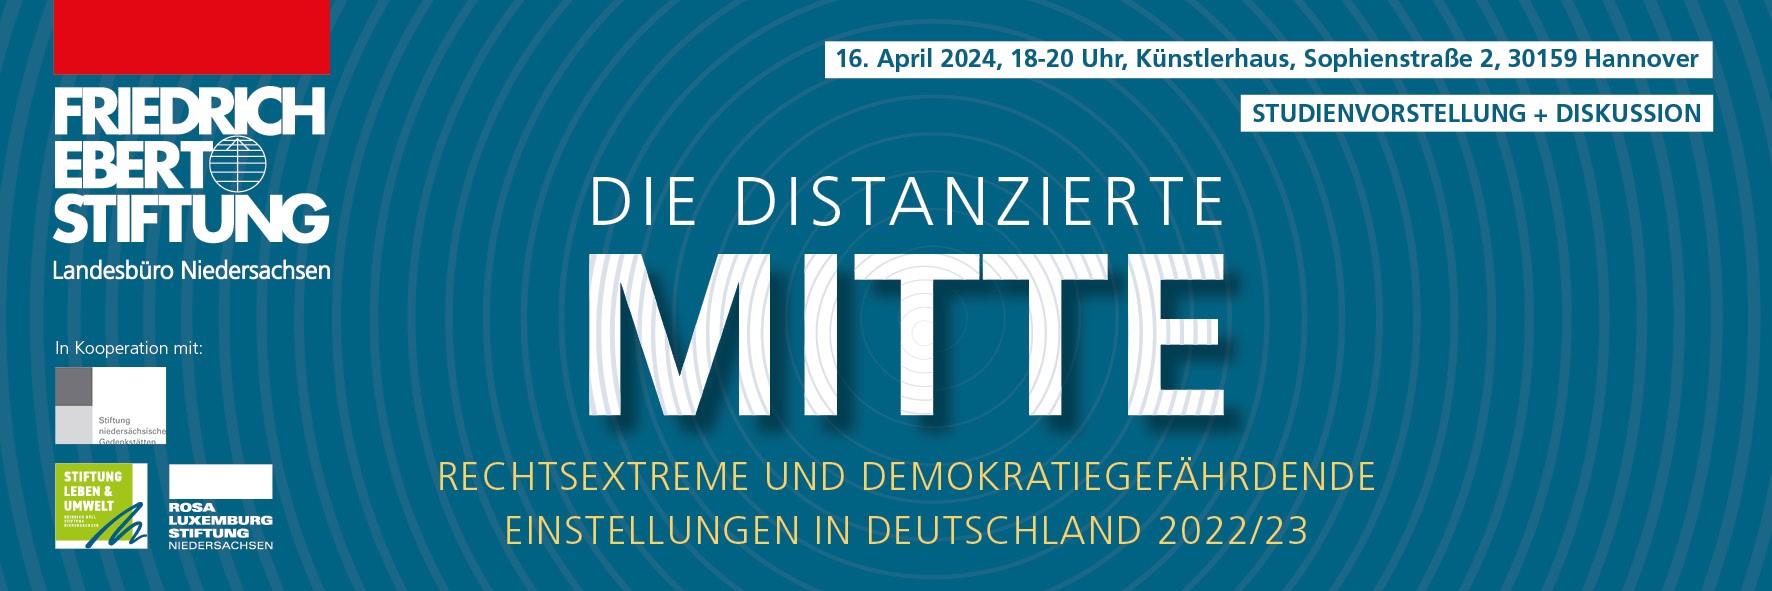 Die distanzierte Mitte. Rechtsextreme und demokratiegefährdende Einstellungen in Deutschland 2022/23 